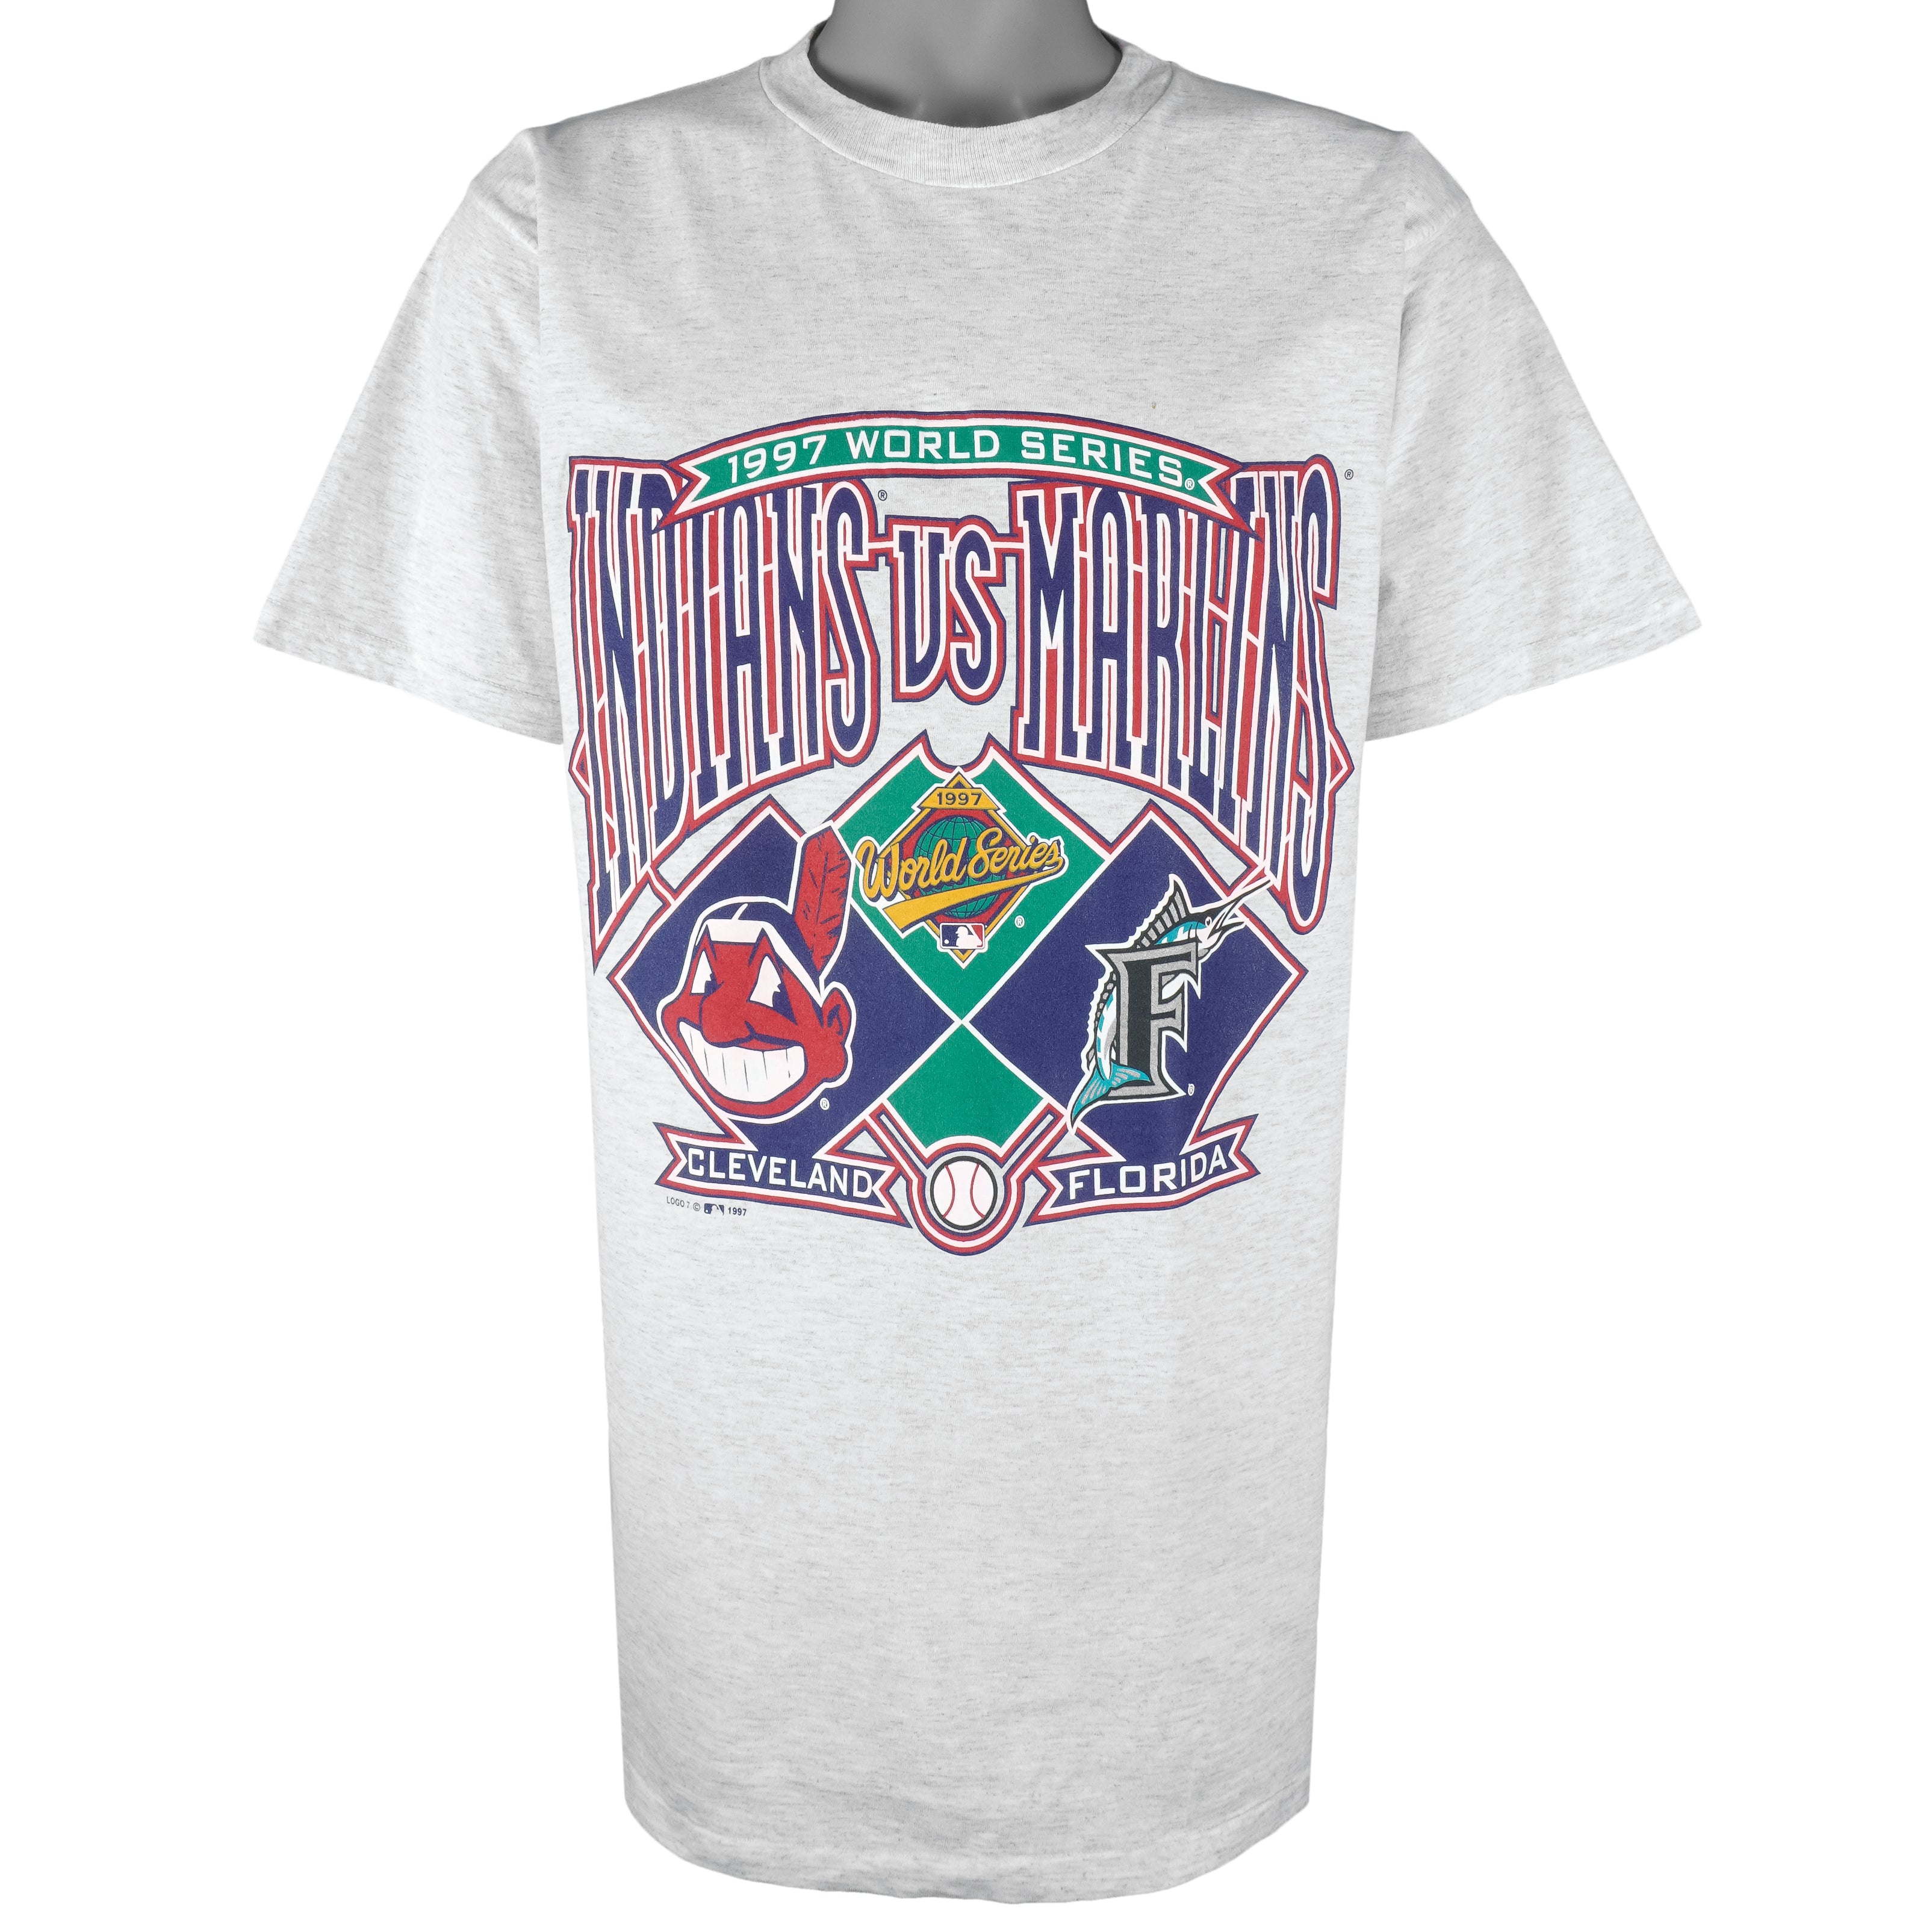 Vintage MLB (Logo 7) - Cleveland Indians Vs Florida Marlins T-Shirt 1997 Large